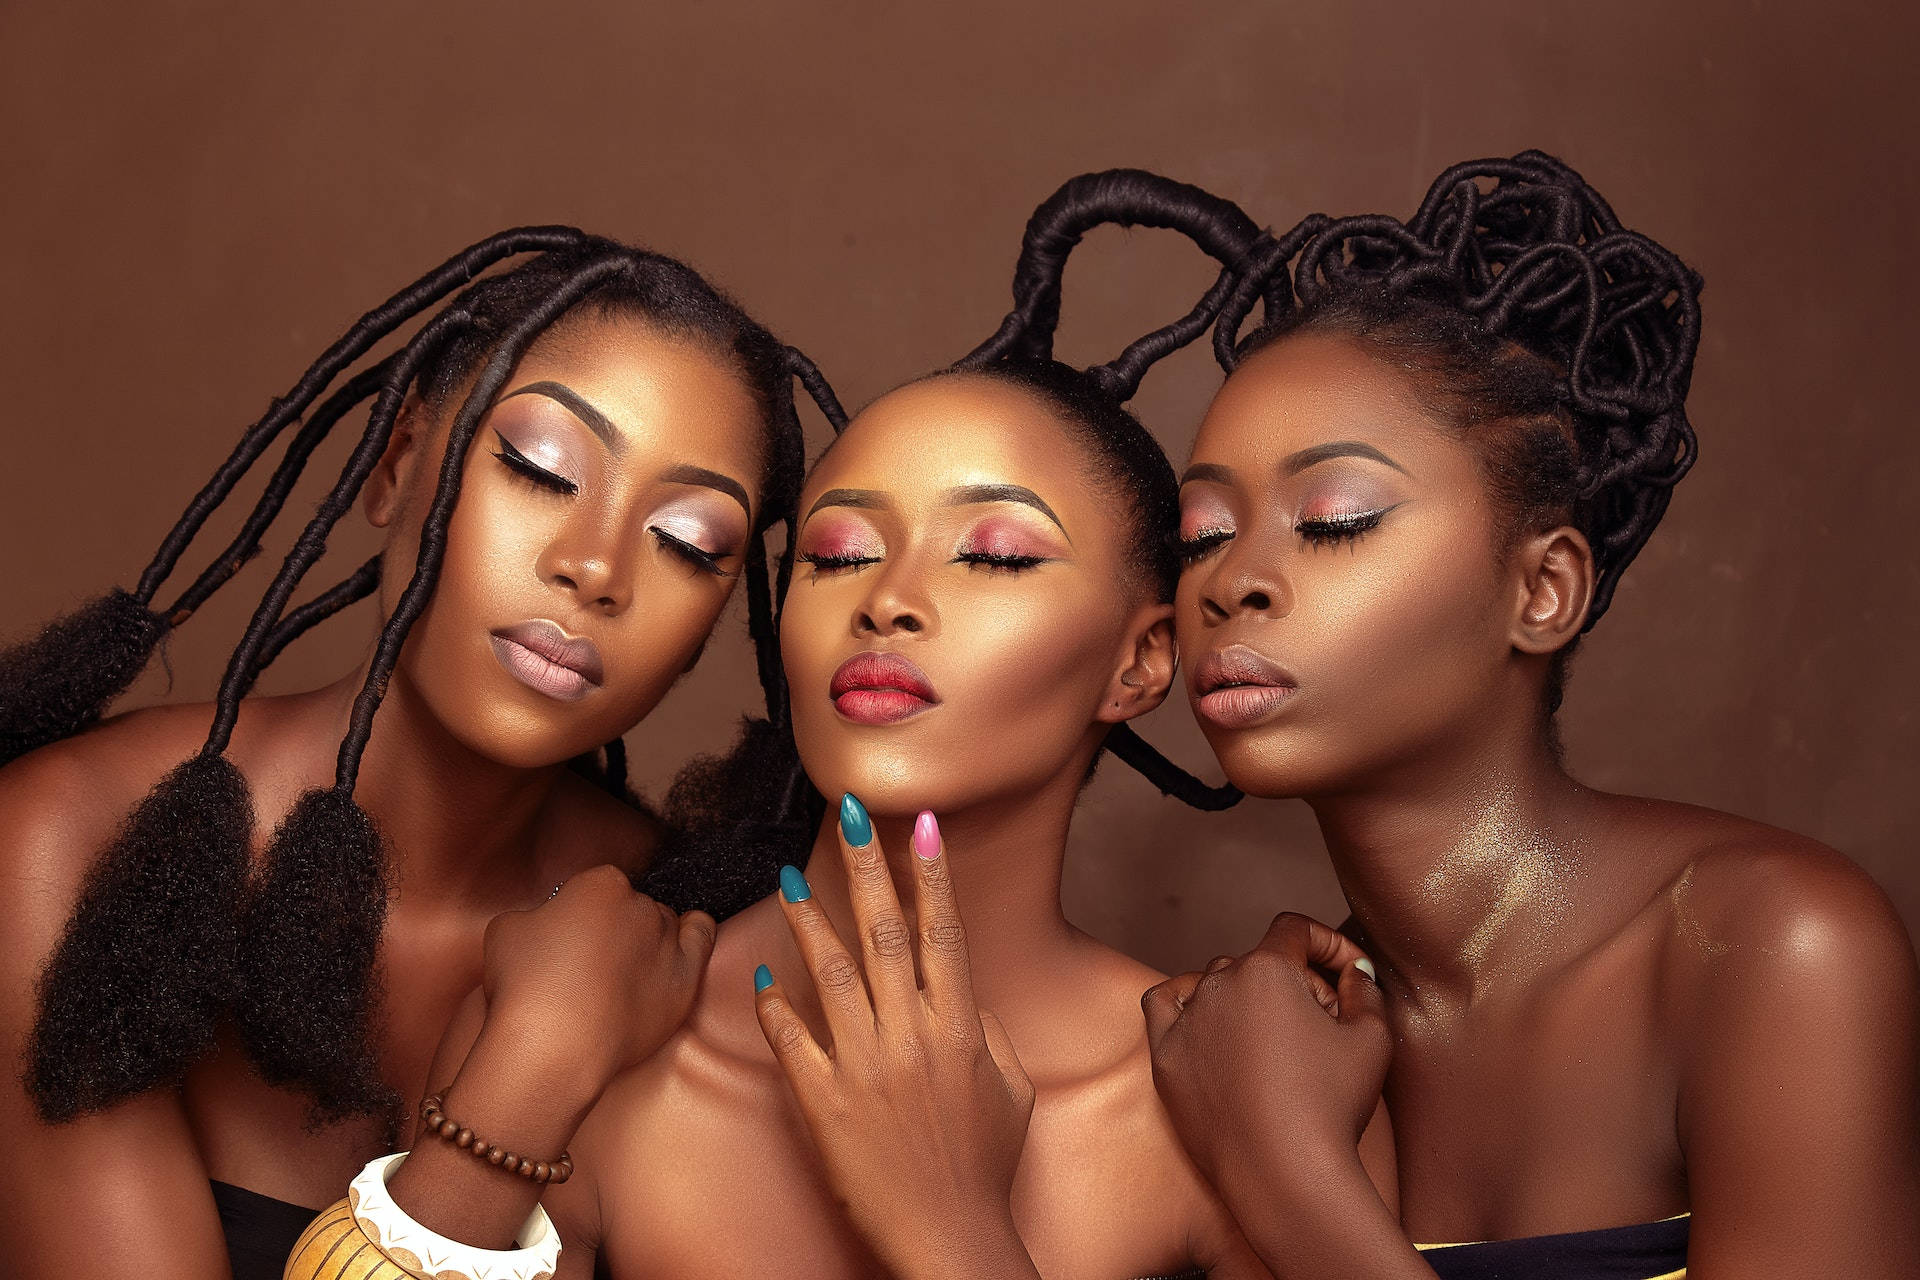 Sexy Black Women Wallpaper